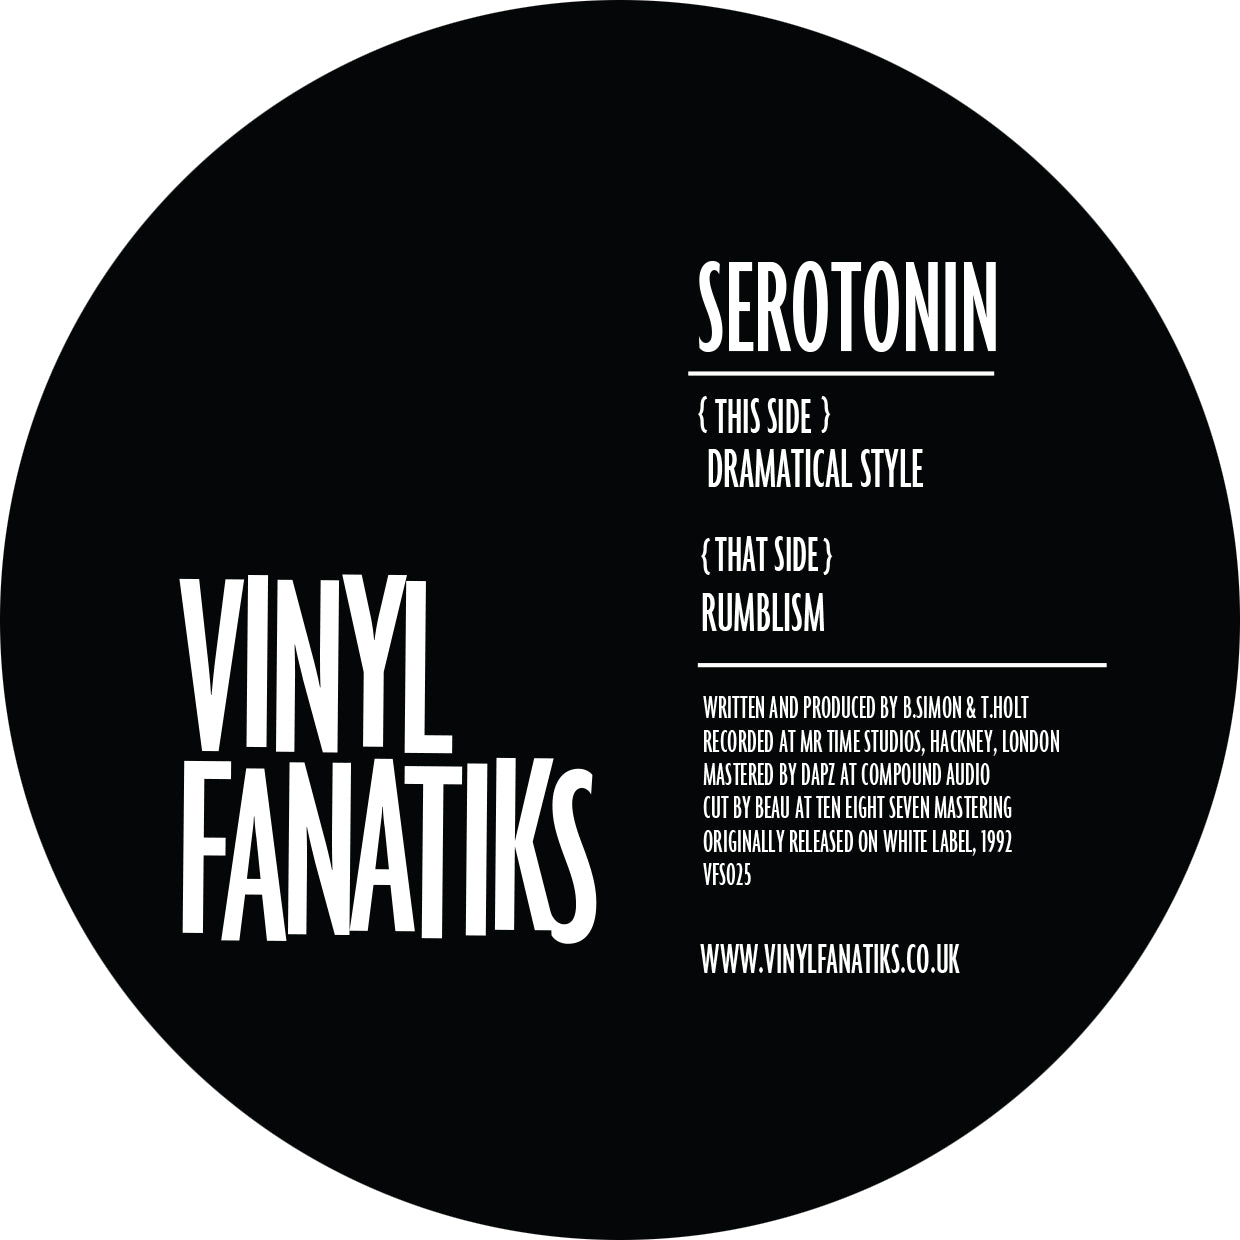 The Vinyl Fanatiks Double Pack - Serotonin & Ellis Dee